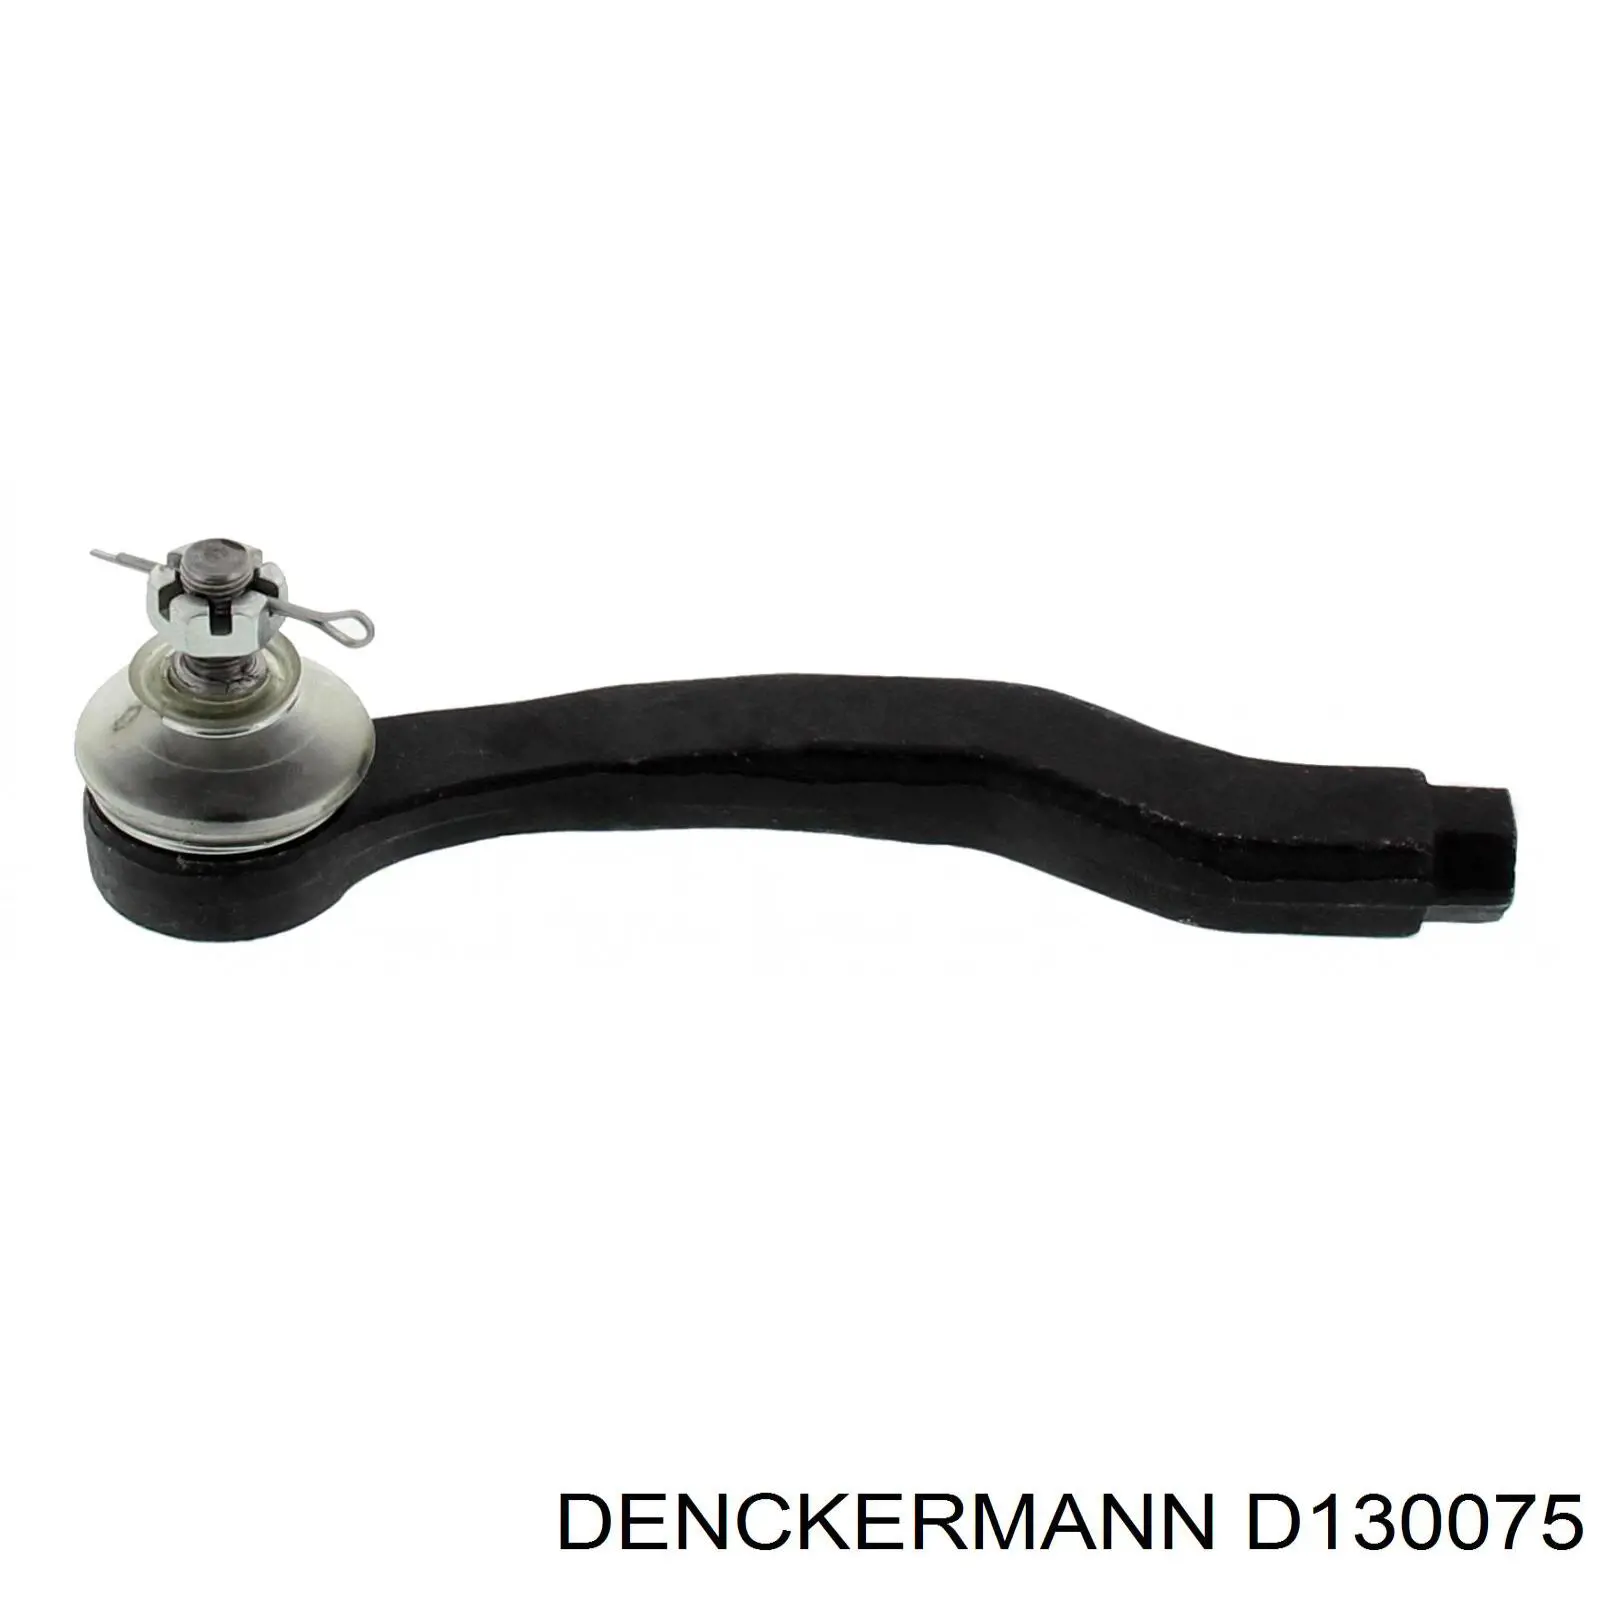 D130075 Denckermann rótula barra de acoplamiento exterior